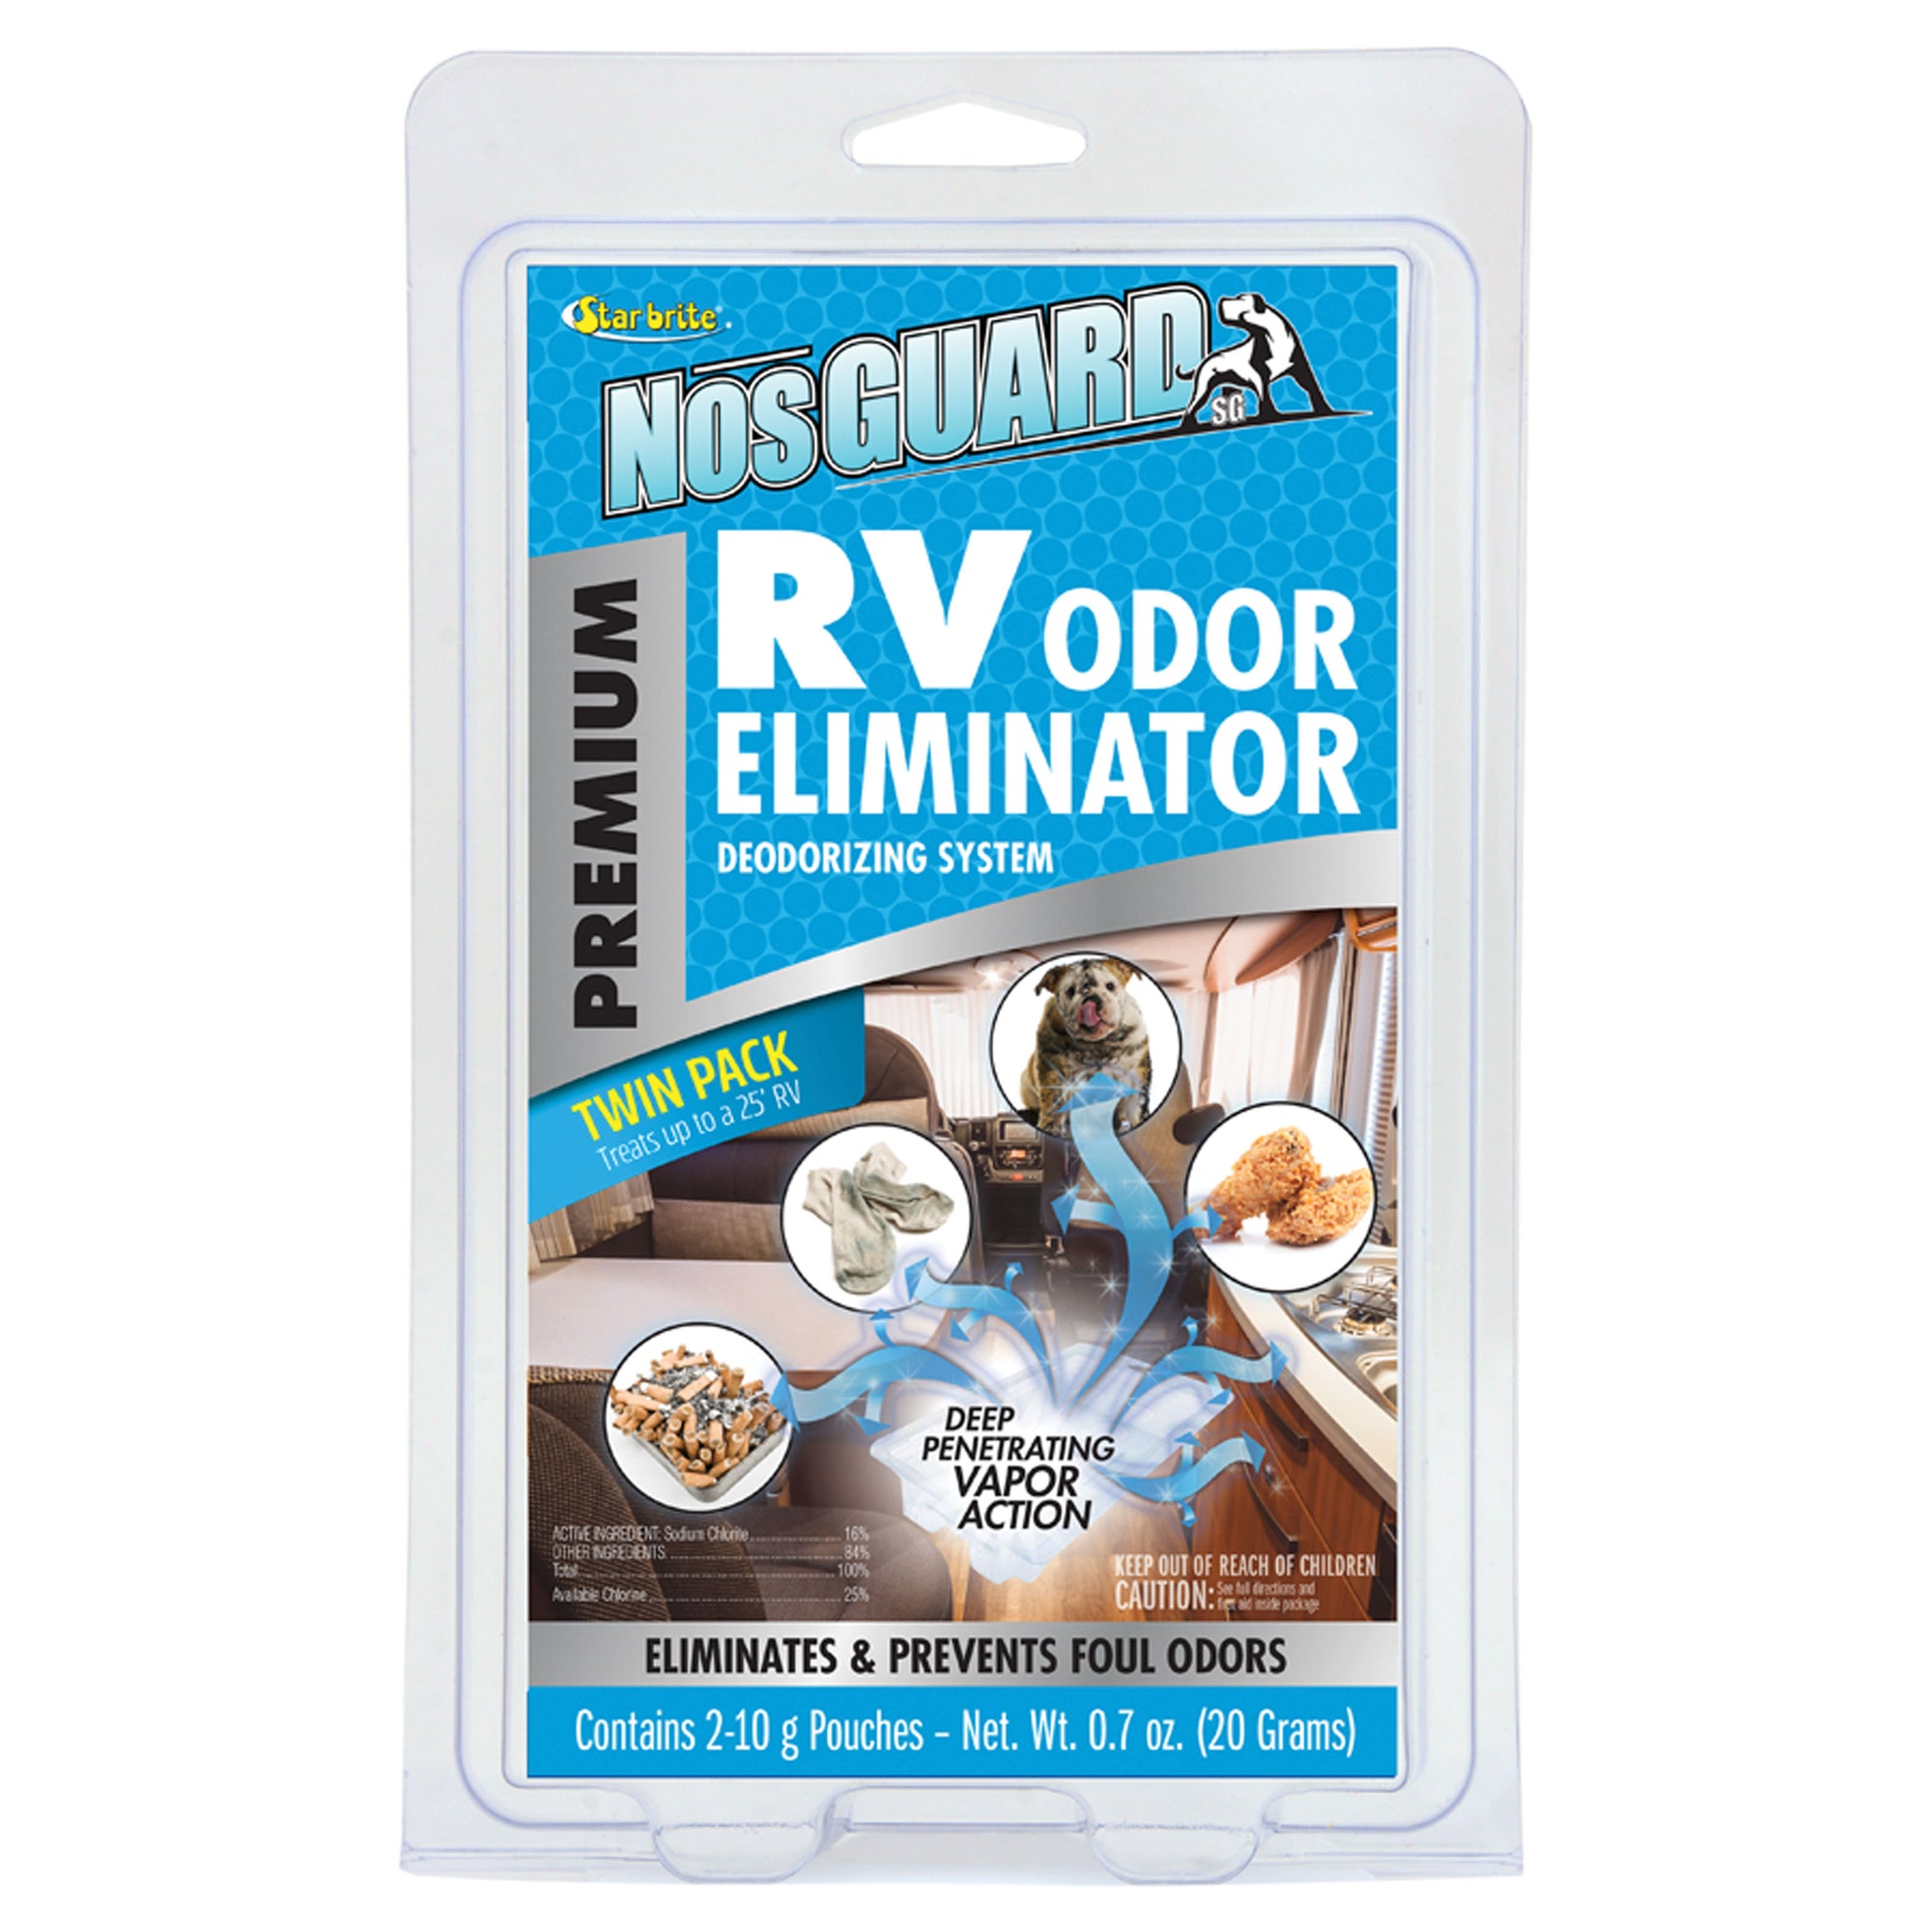 Star brite 79950 NosGuard Premium RV Odor Eliminator Deodorizing System